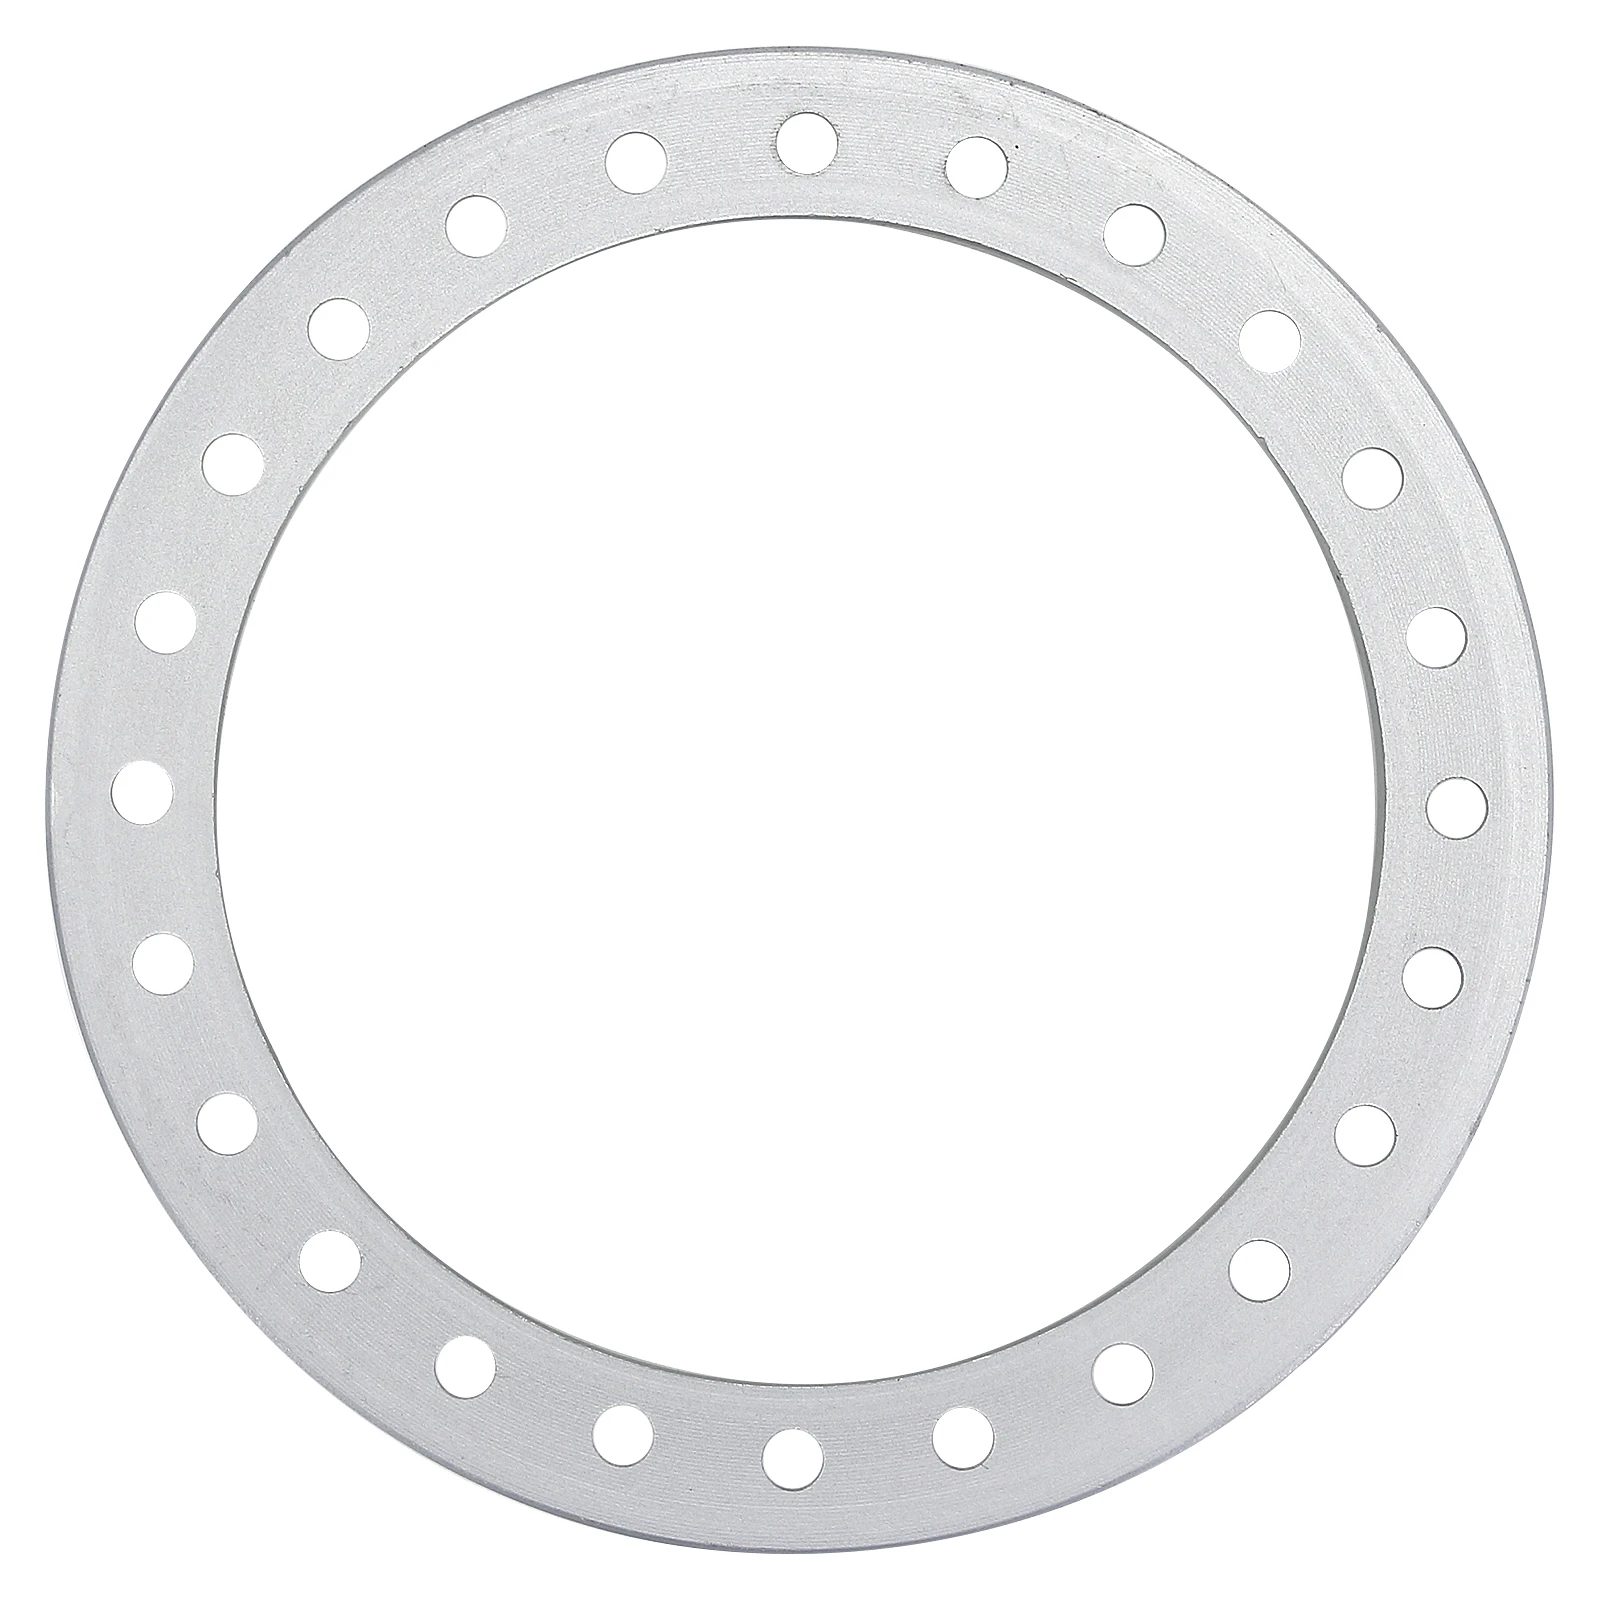 INJORA 4 шт. CNC алюминиевое внешнее колесо кольцо Beadlock для 1 9 "колеса обод 1/10 RC